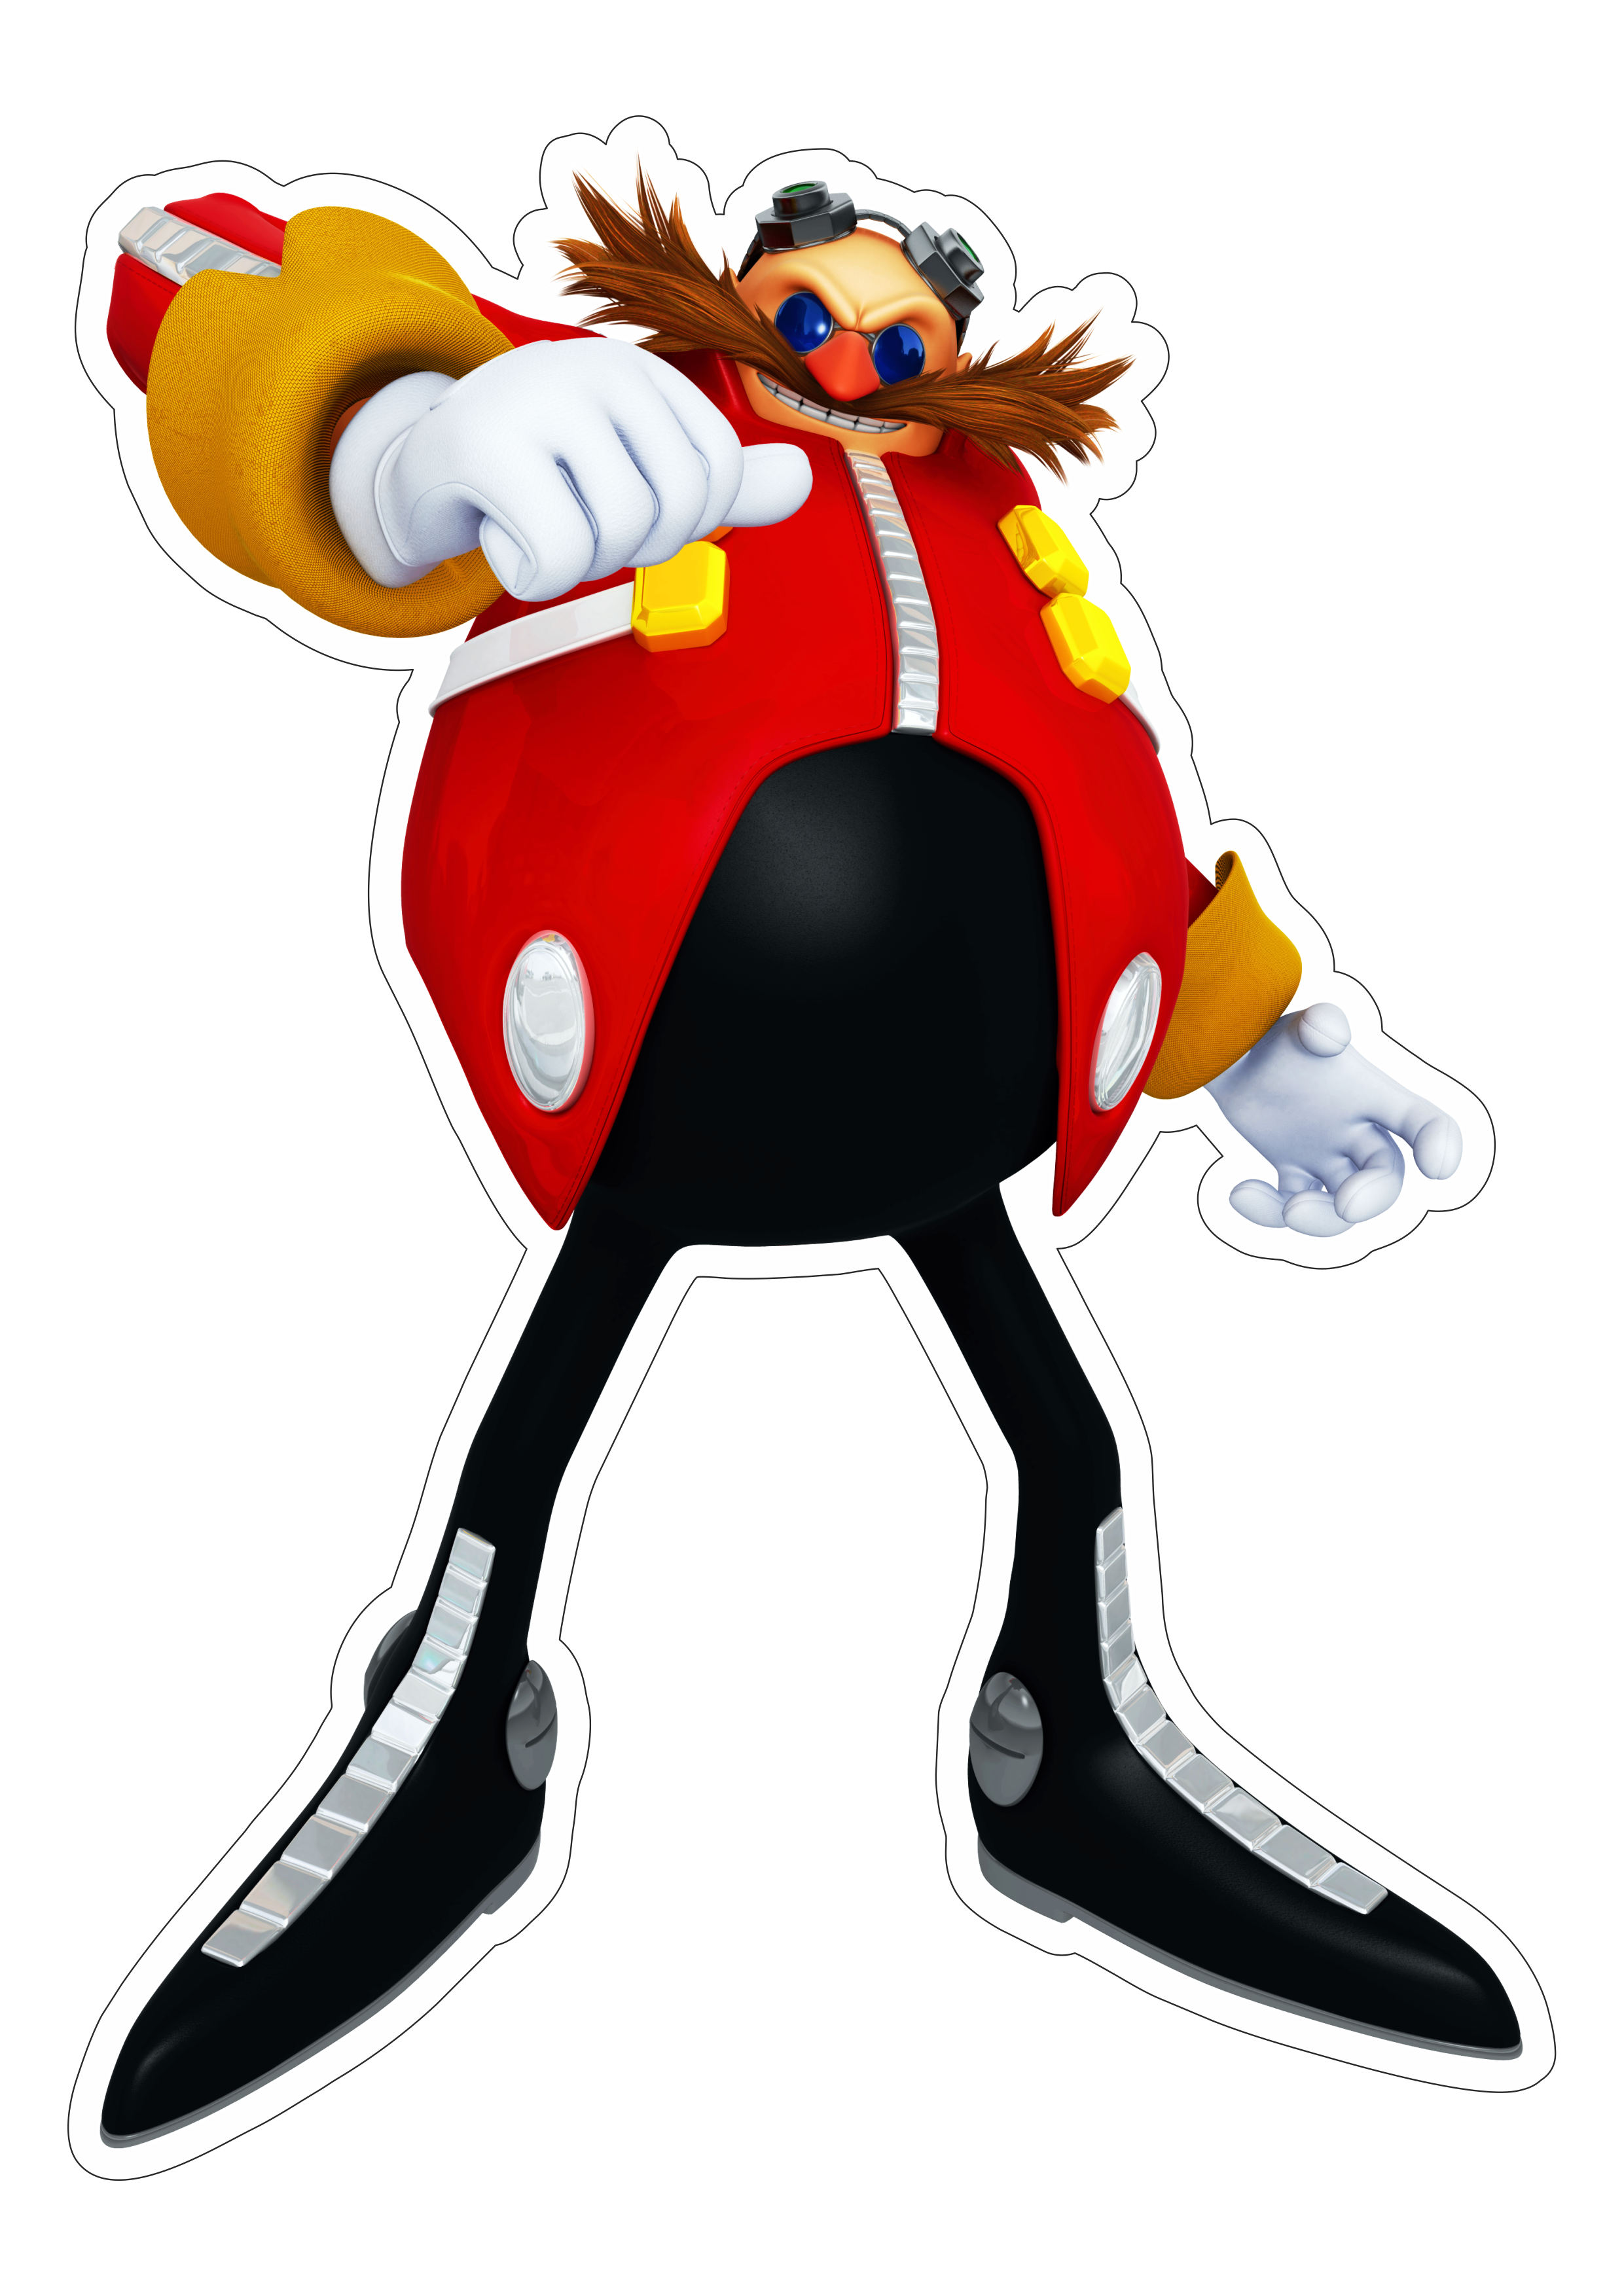 Sonic the hedgehog personagem de game doutor eggman fundo transparente com contorno png